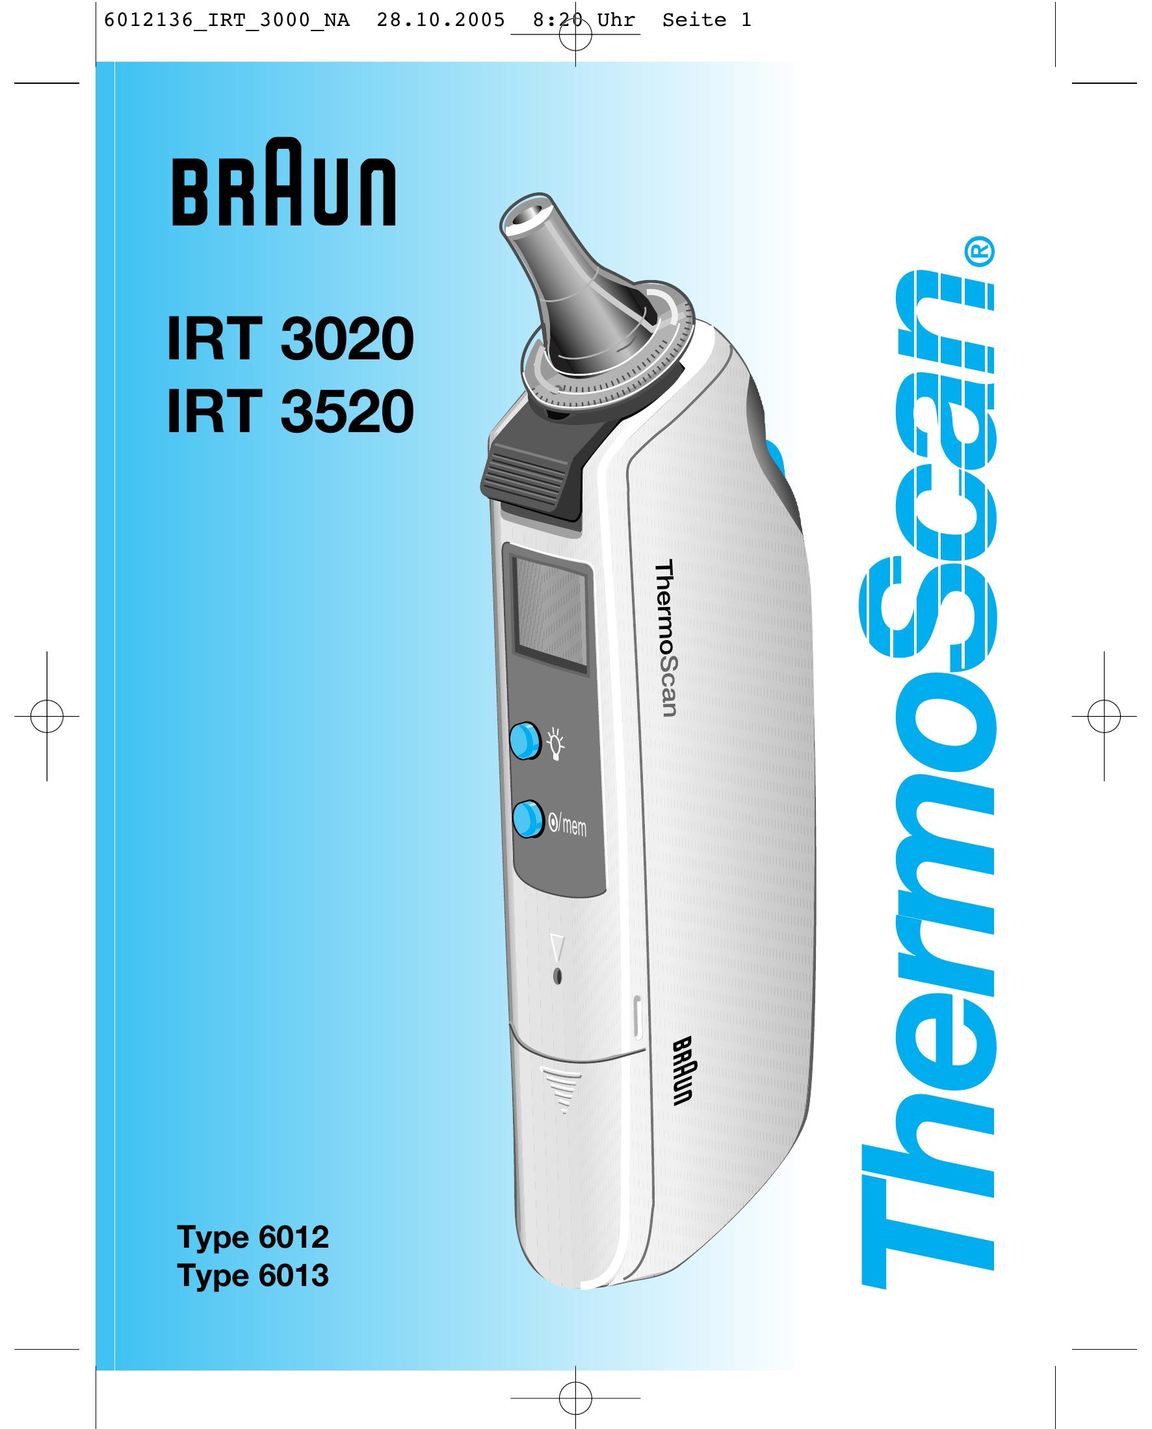 Braun IRT 3520 Range User Manual